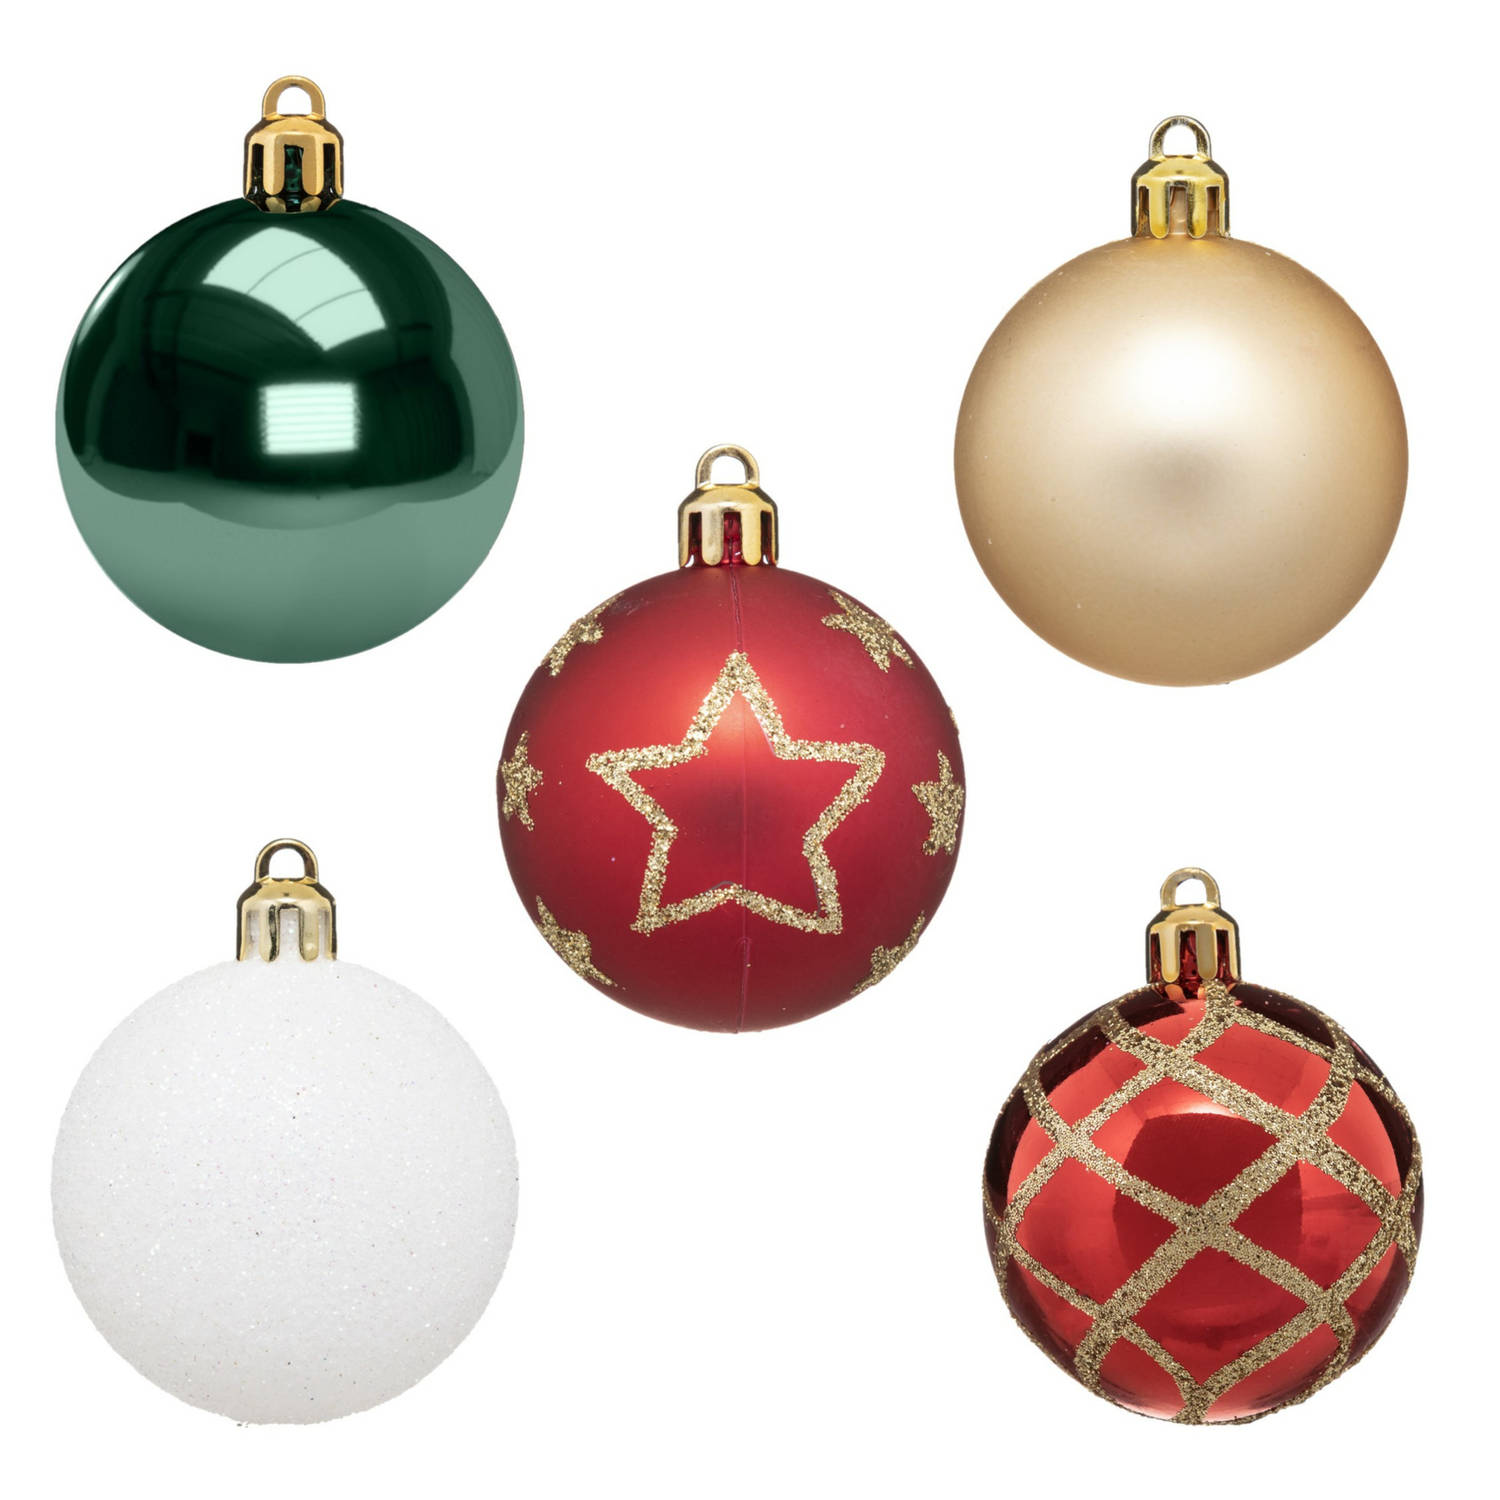 15x stuks kerstballen mix wit/rood/groen/champagne gedecoreerd kunststof 5 cm - Kerstbal